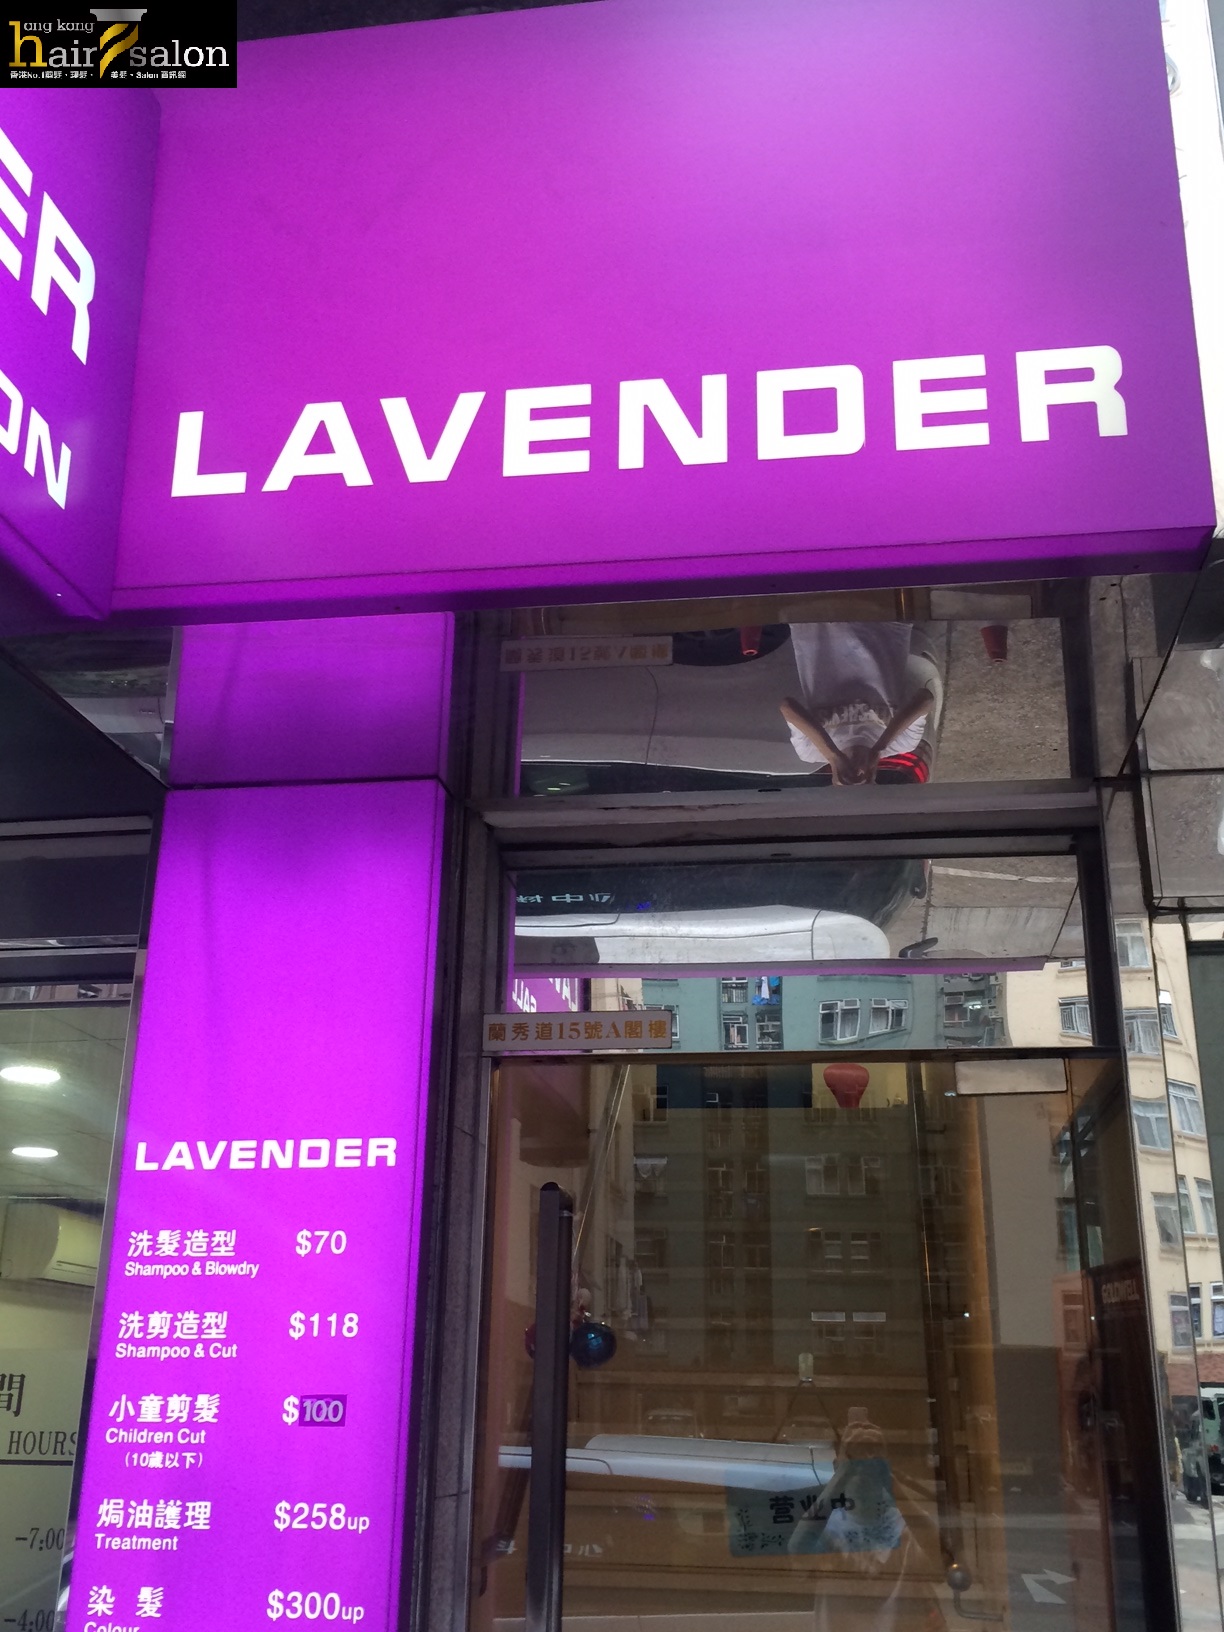 Hair Colouring: Lavender Salon